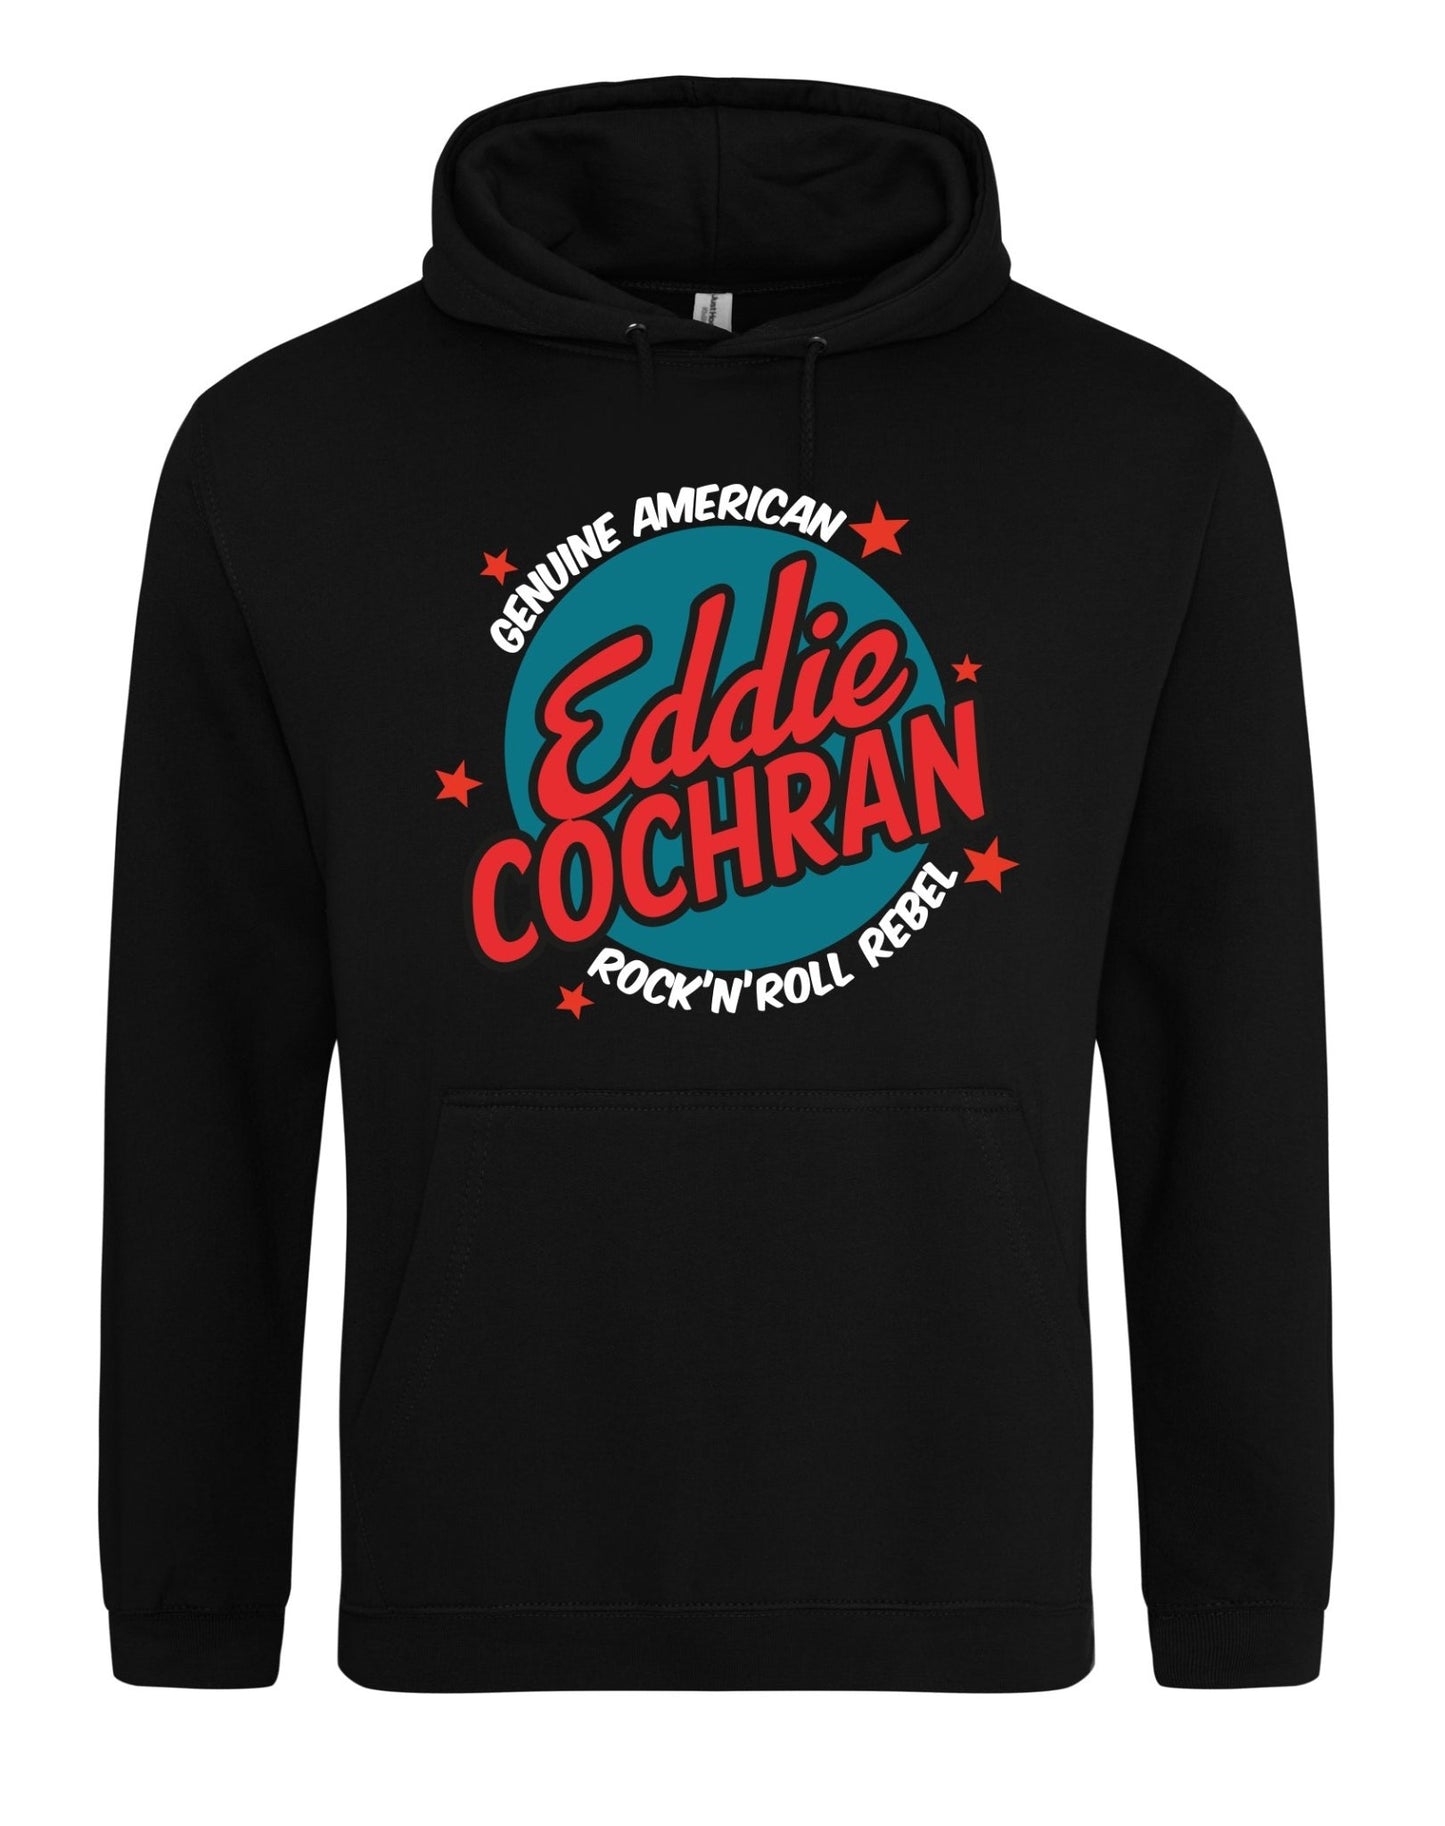 Eddie Cochran - rock'n'roll rebel - unisex fit hoodie - various colours - Dirty Stop Outs